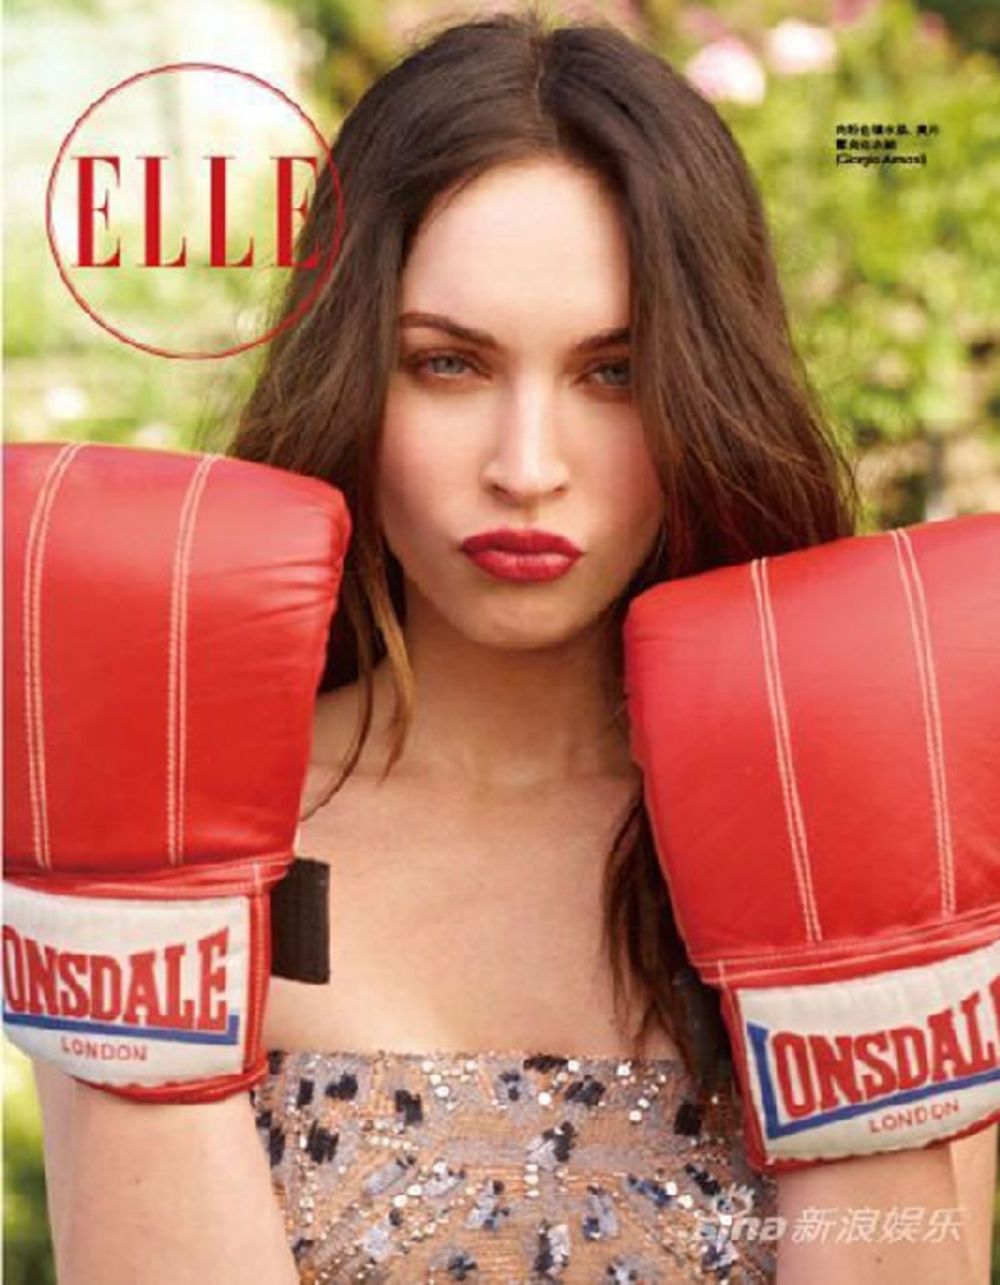 Američka glumica i manekenka Megan Fox ponovo je pokazala je svoje atribute fotografišući se za naslovnicu kineskog magazina Elle. Dvadesetpetogodišnja brineta očigledno ne dozvoljava da je previše dotiče to što više nije deo ekipe Transformers franšize, već s